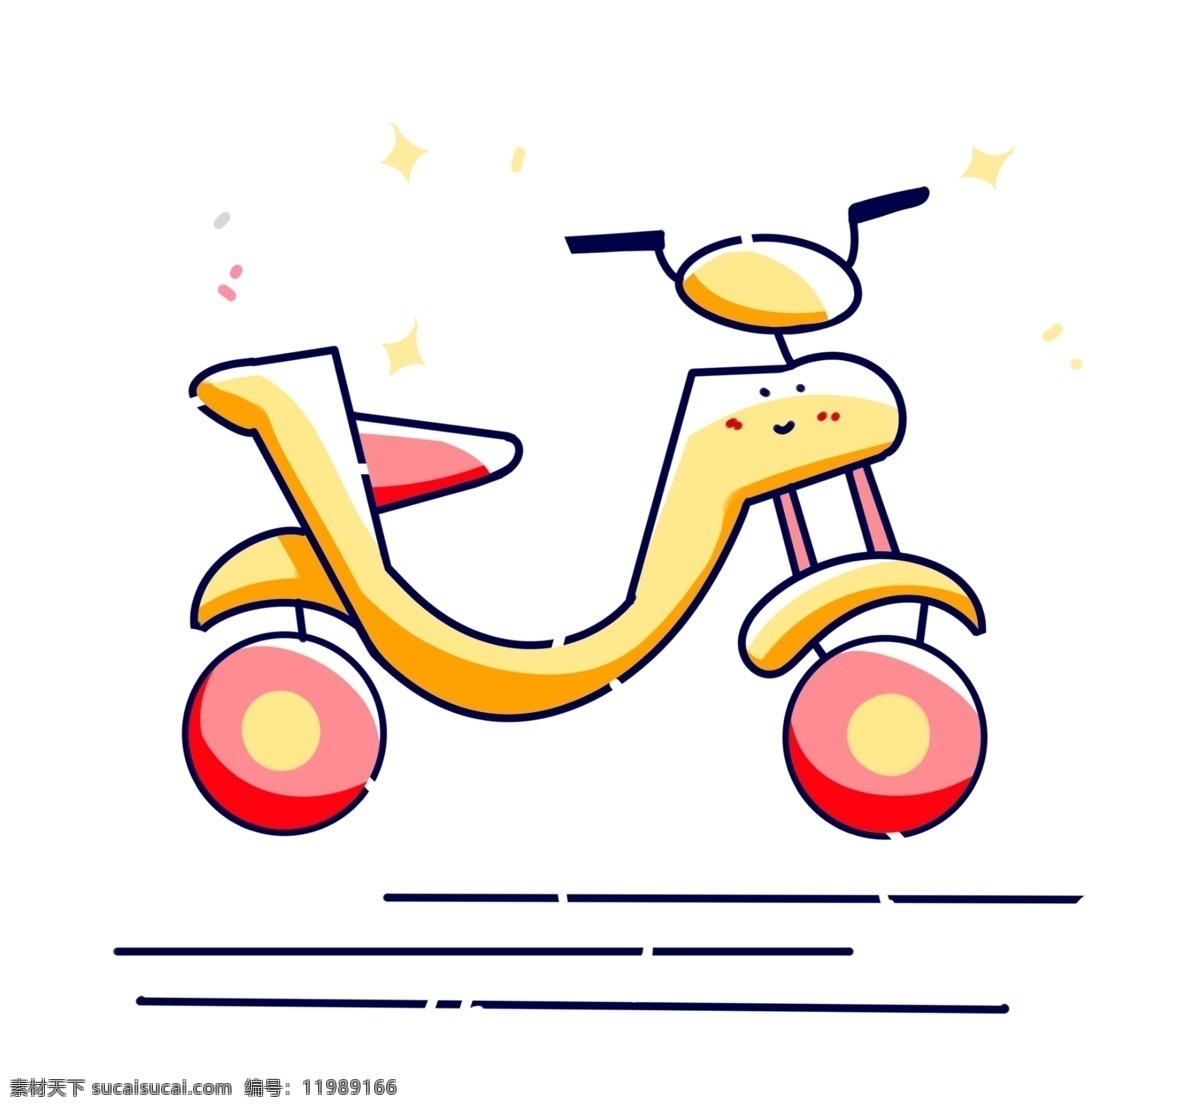 黄色 卡通 自行车 交通工具